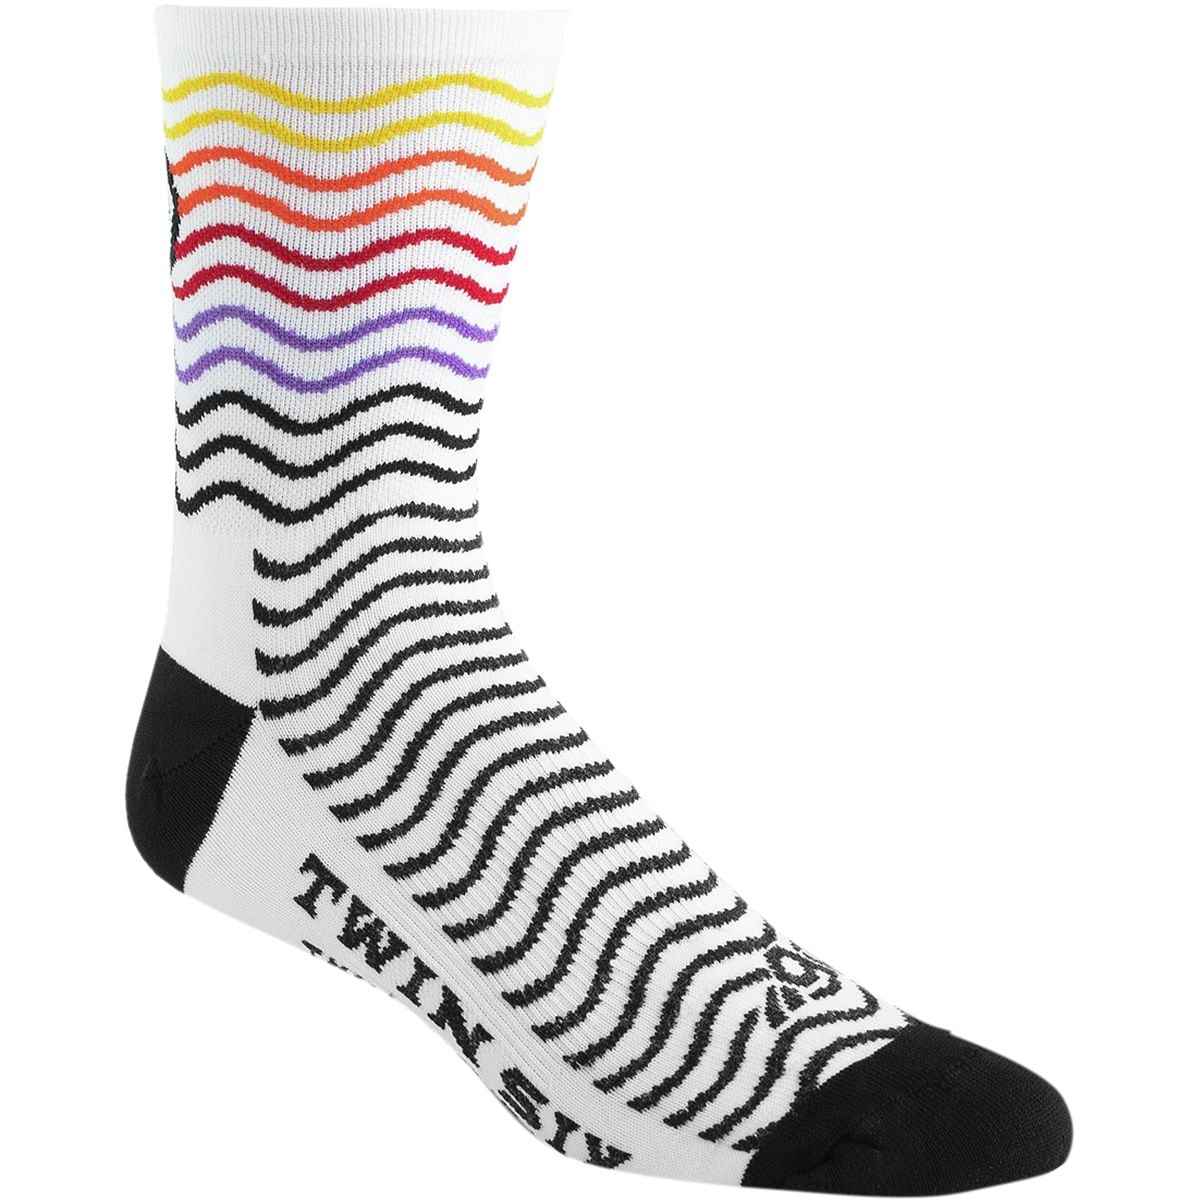 Twin Six Rollers Socks - Men's